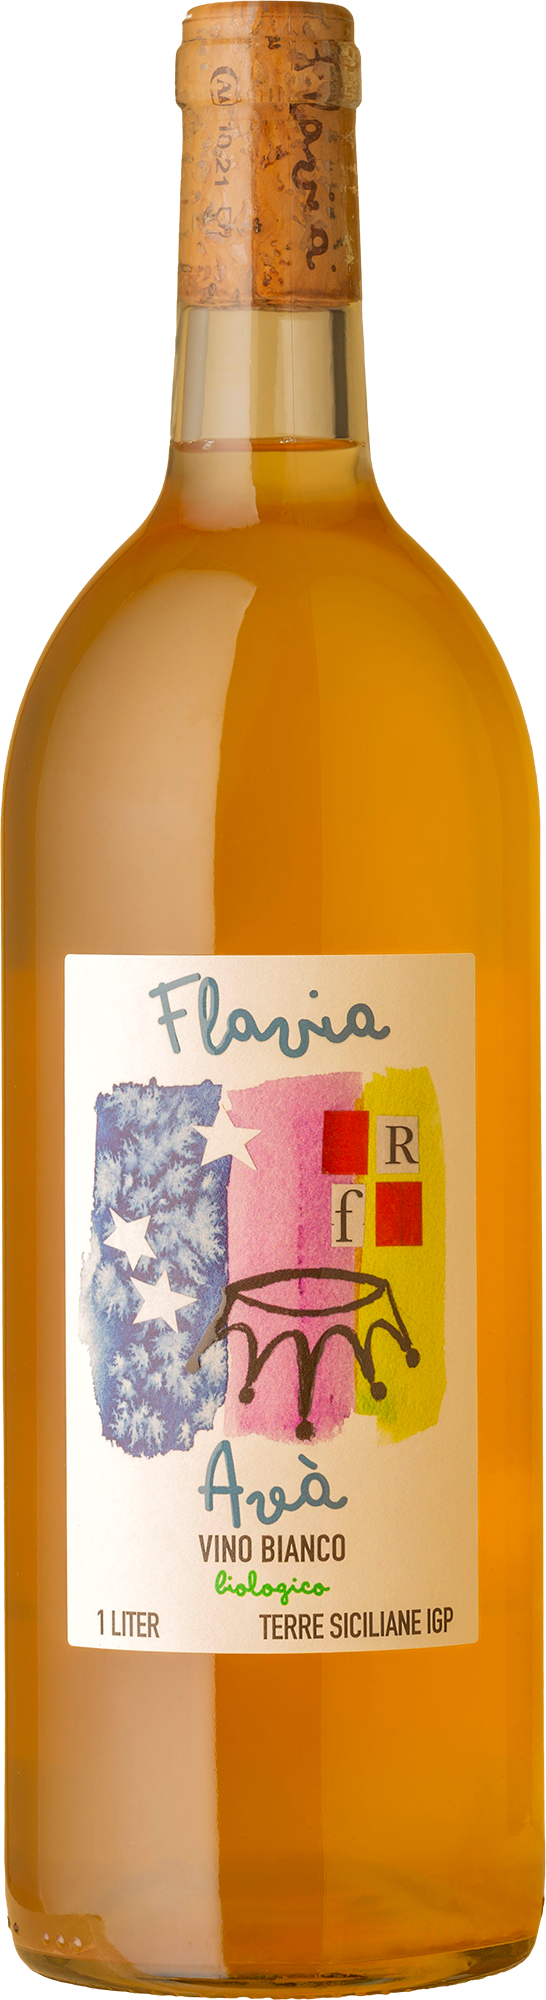 Flavia - Avra' Vino Bianco Grillo 1000mL 2020 White Wine